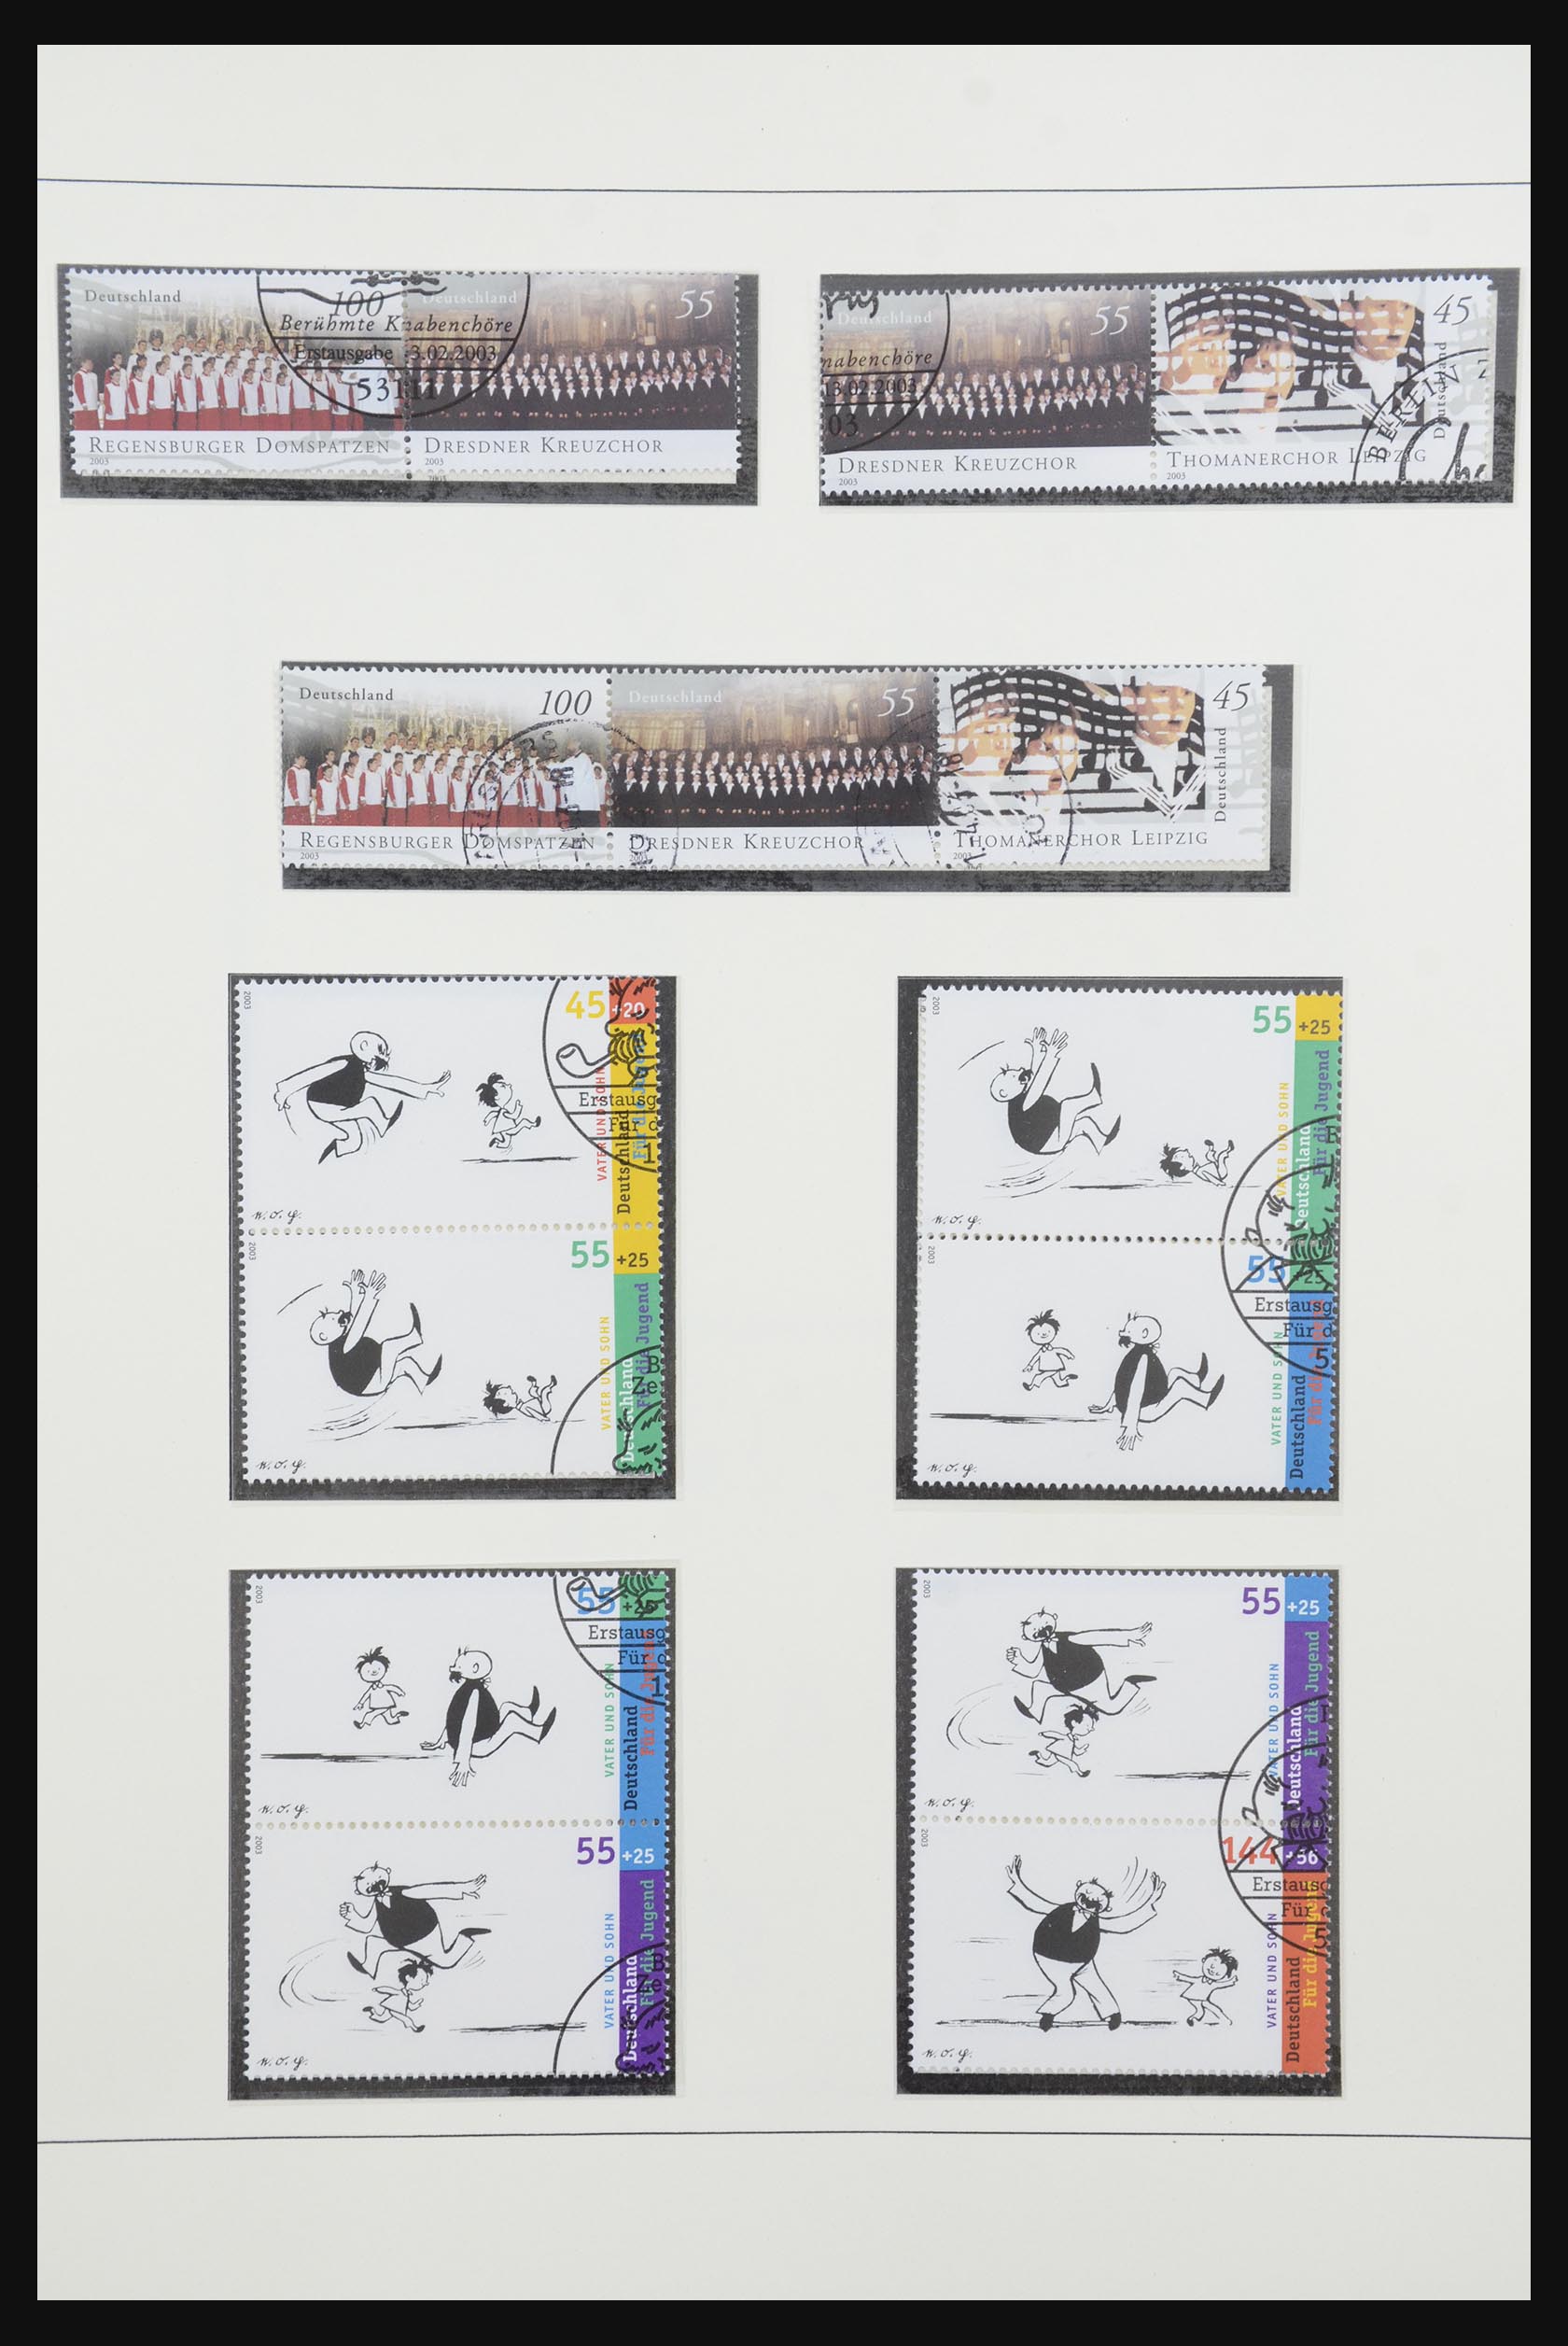 31842 084 - 31842 Bundespost combinations 1951-2003.